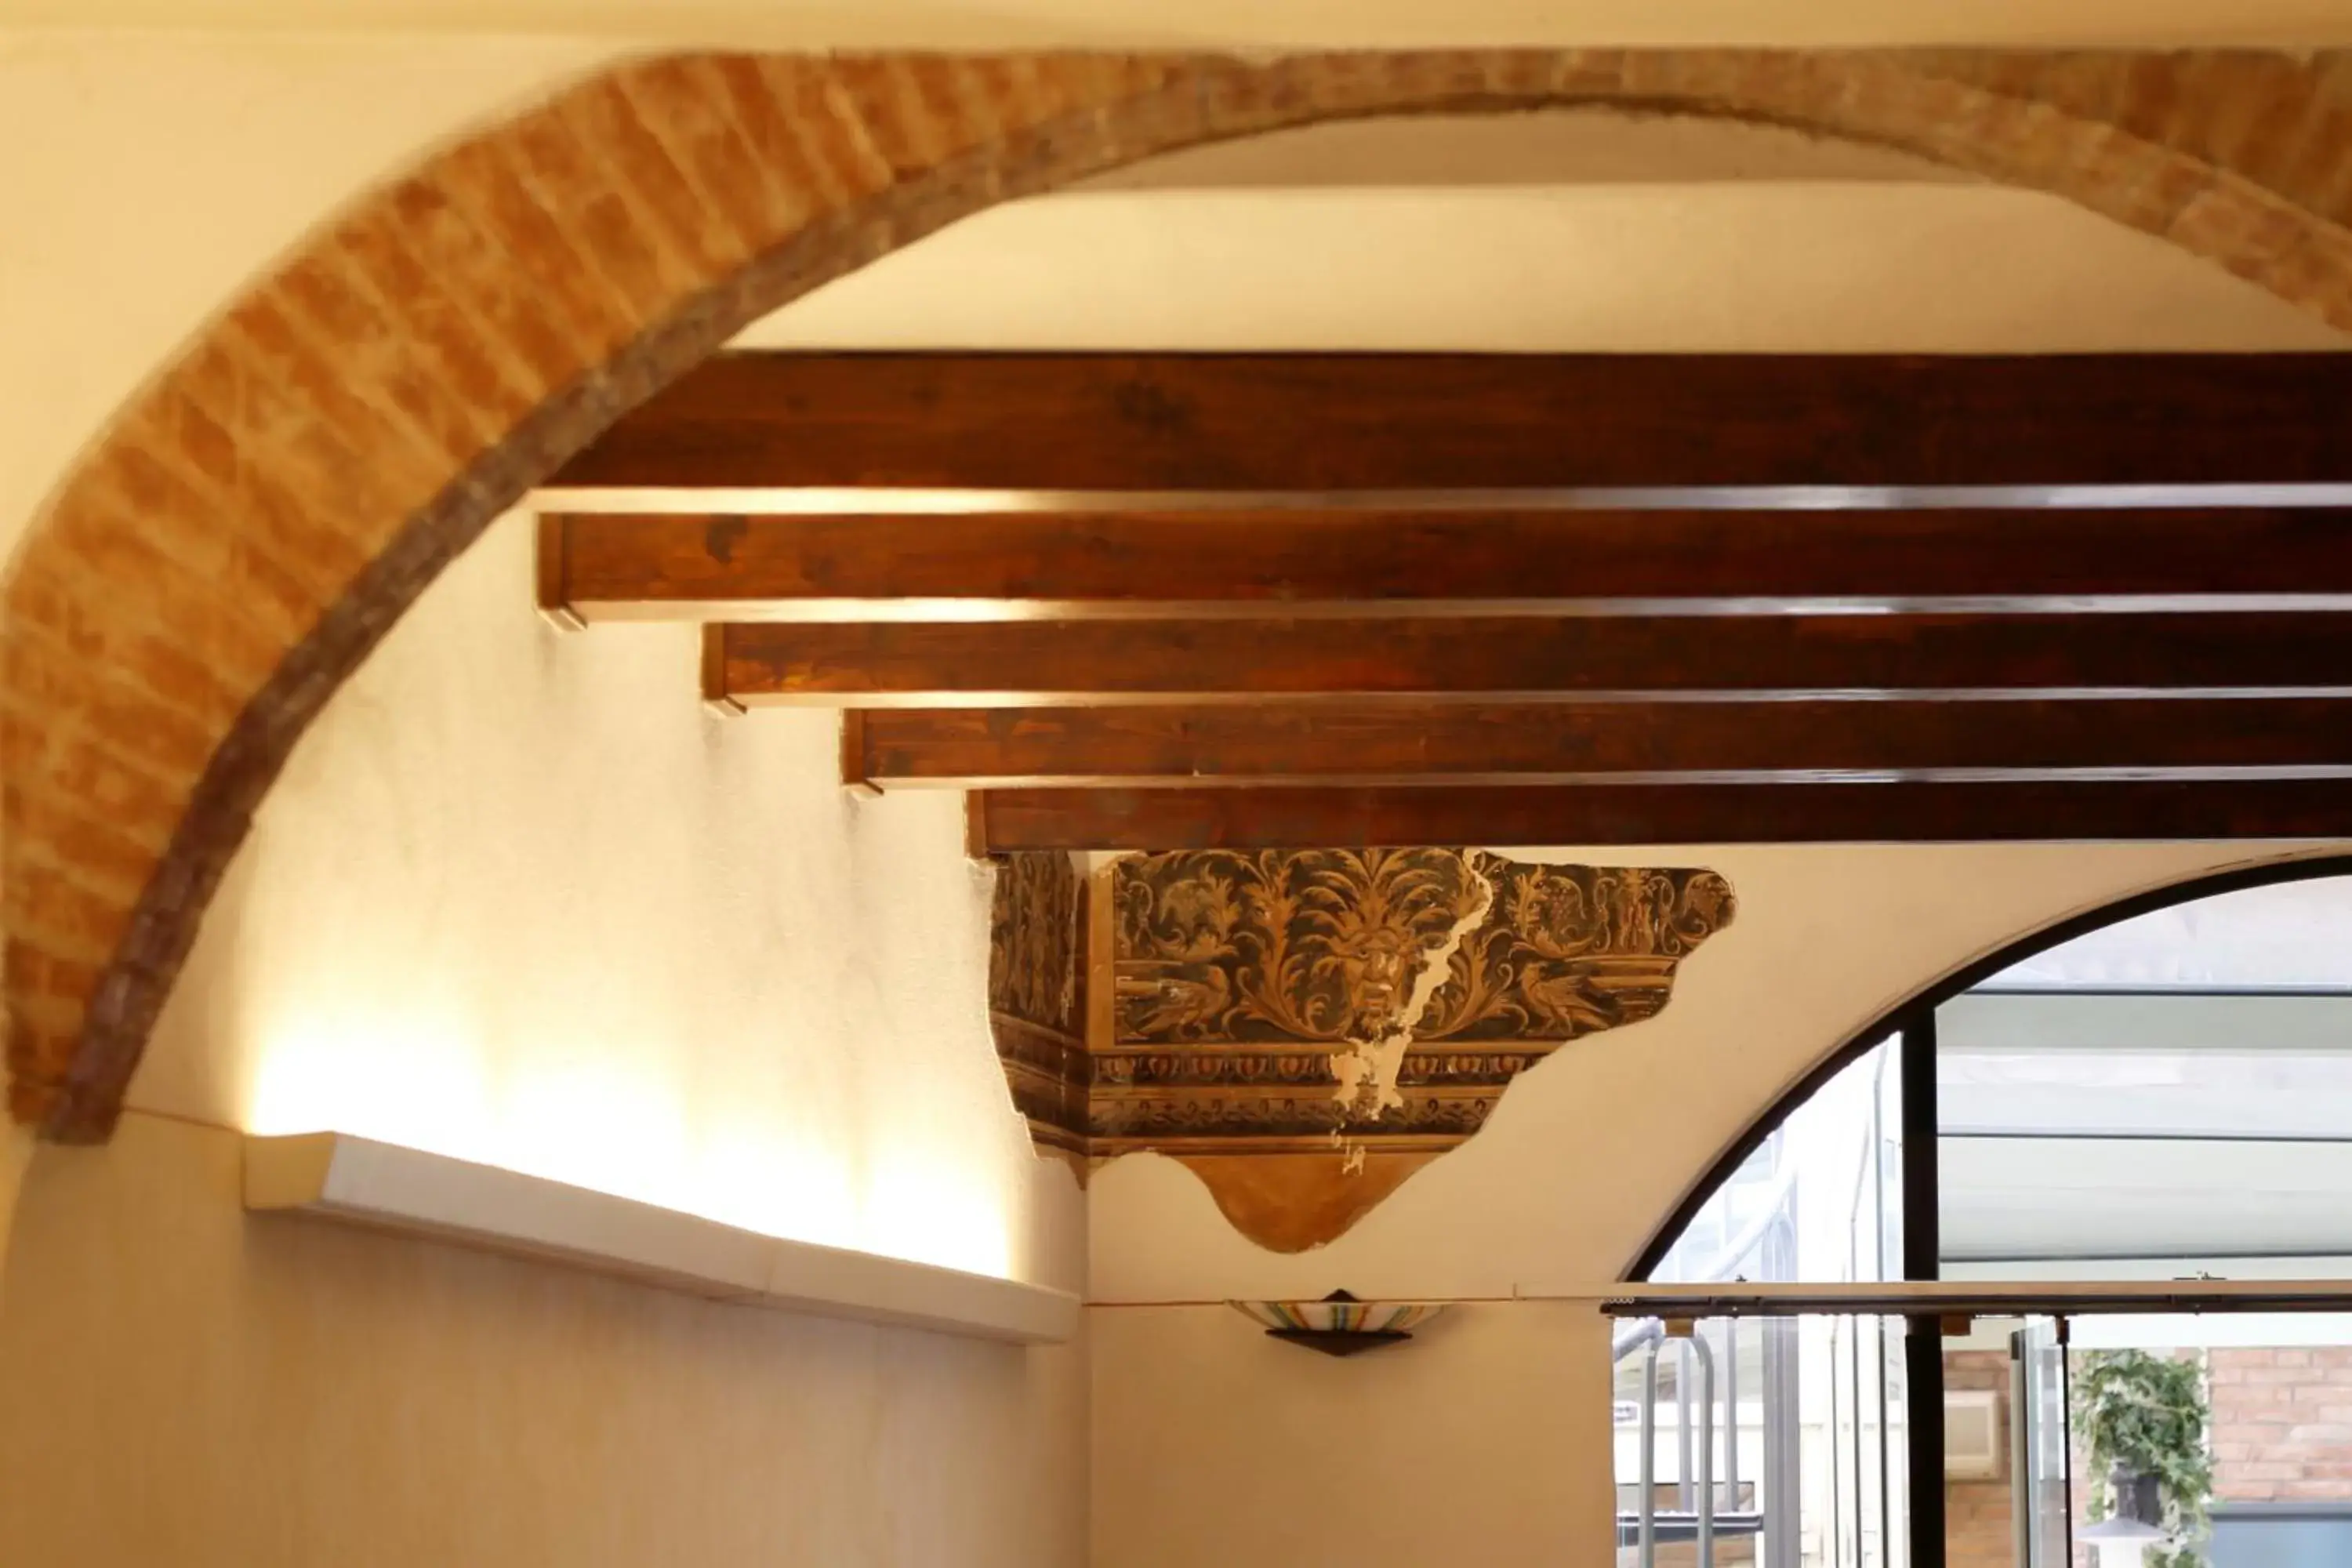 Decorative detail in Antica Dimora Mantova City Centre